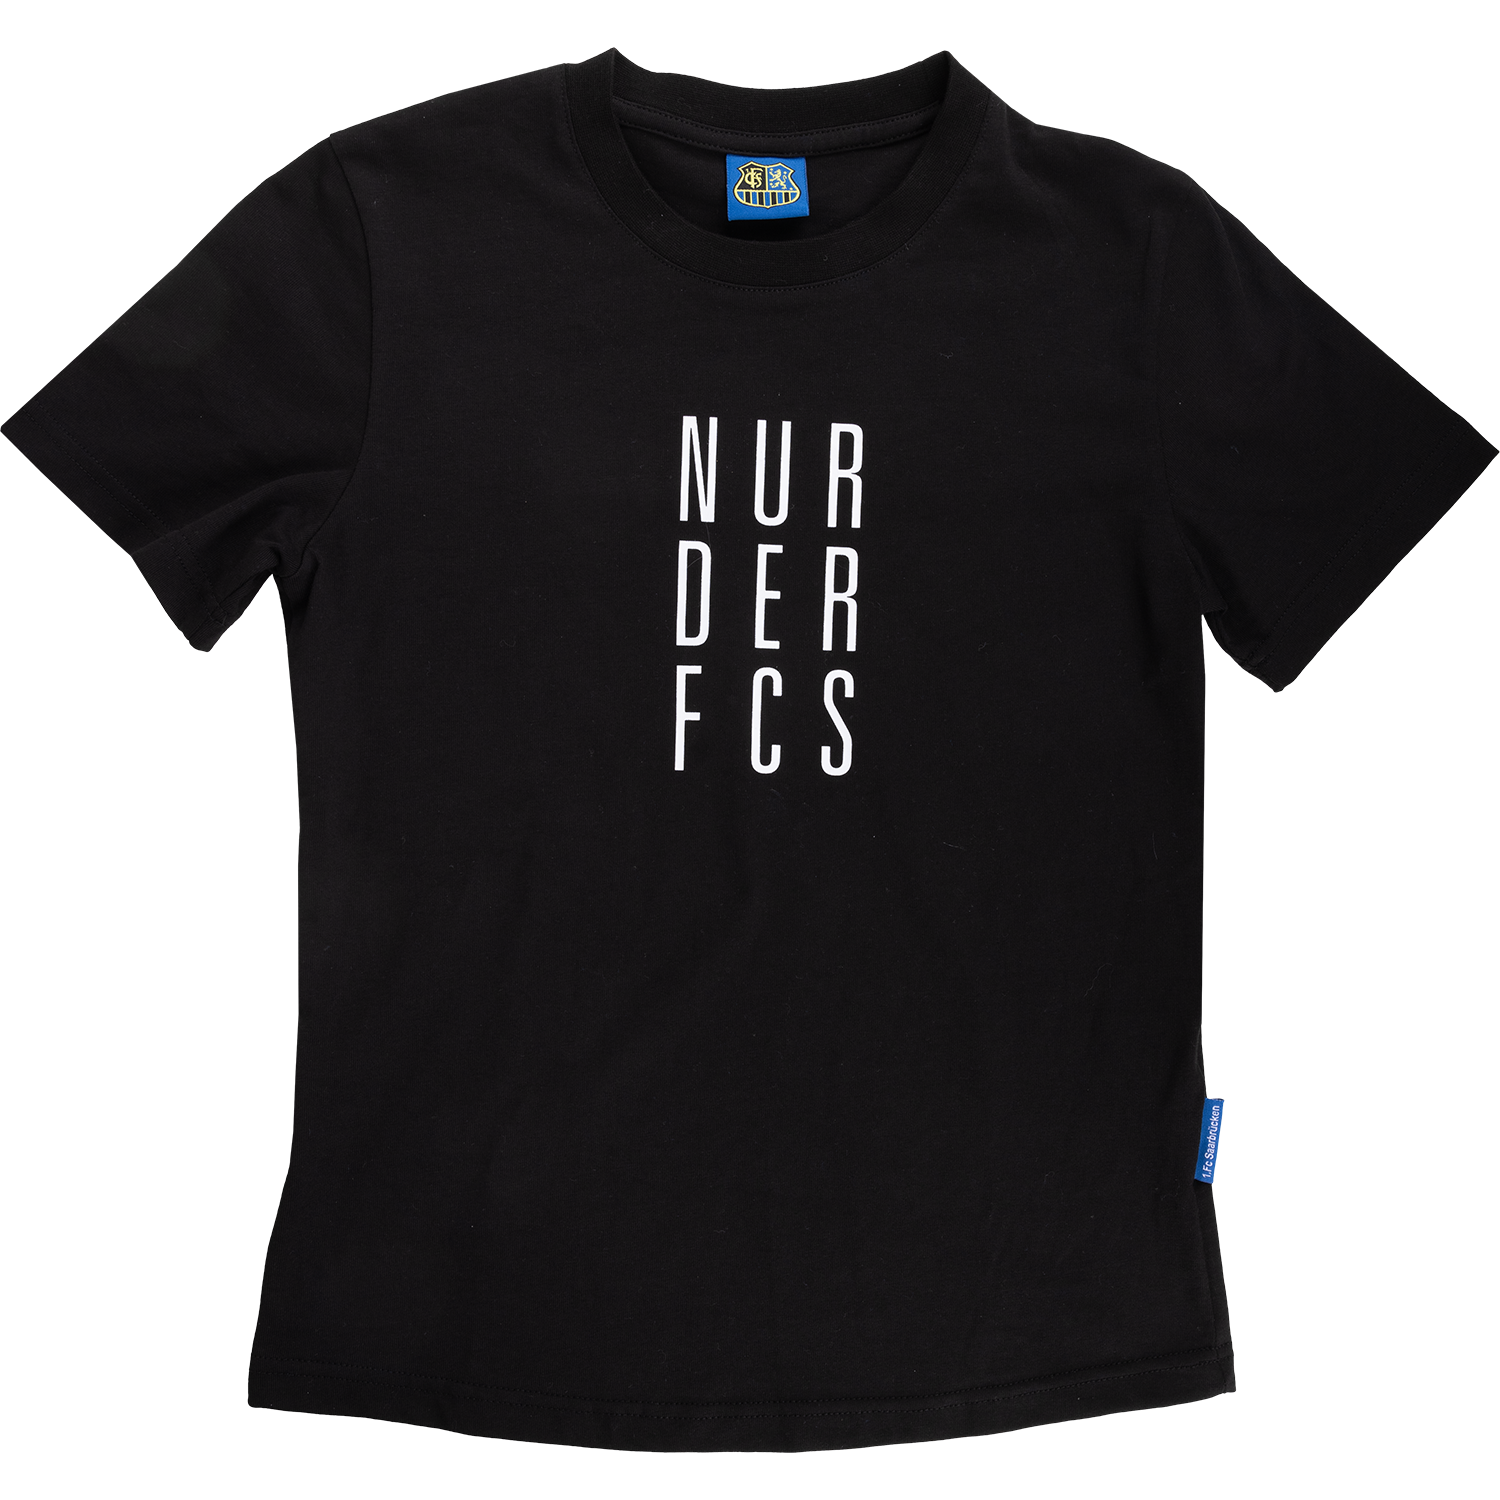 FCS-Kids "NUR DER FCS"